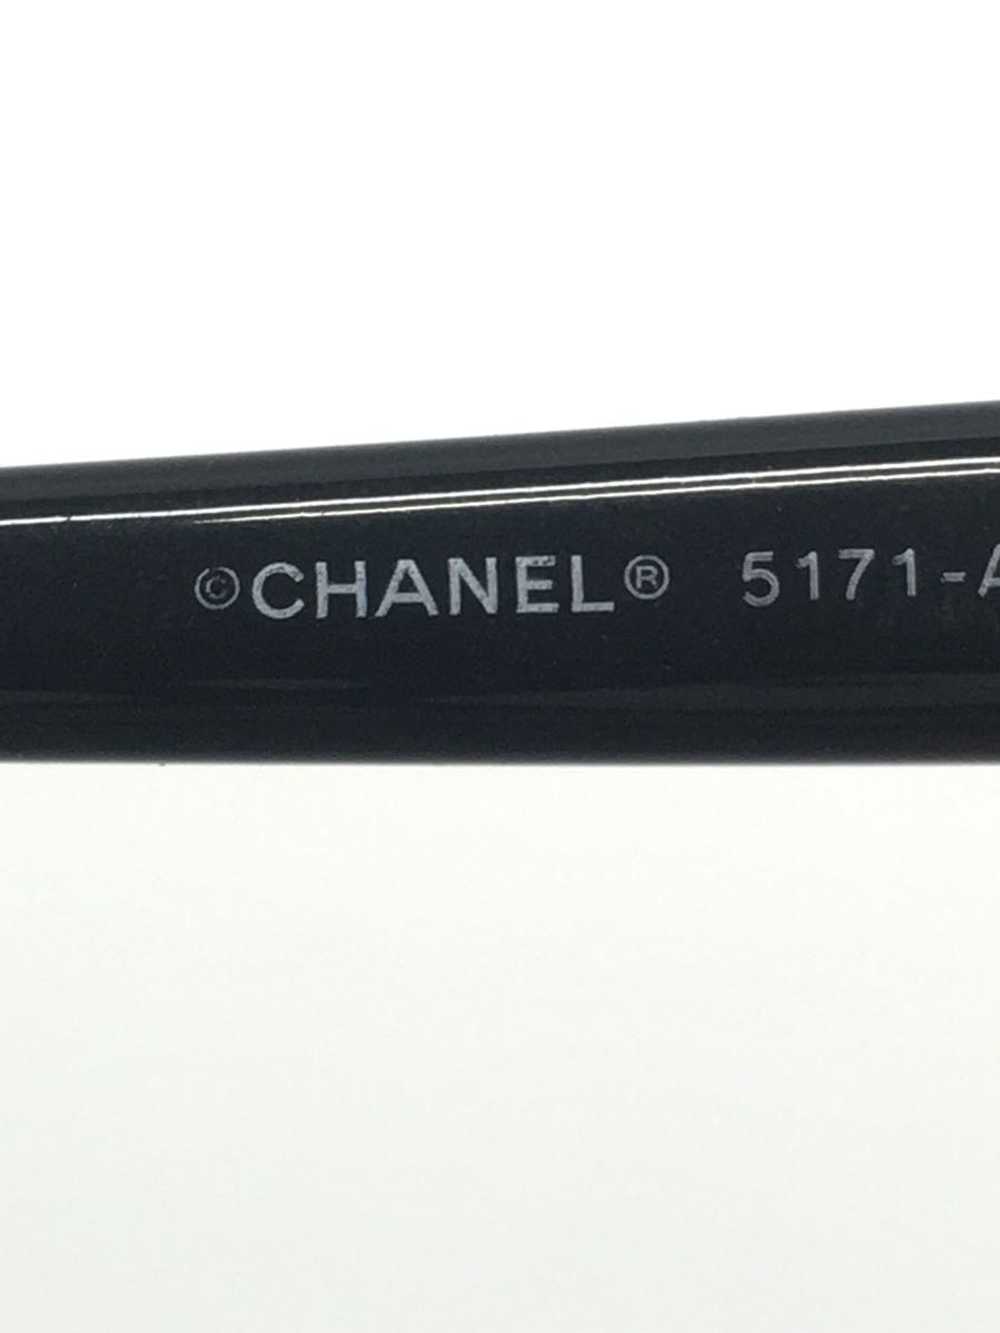 Used Chanel / Ribbon Sunglasses Wellington Plasti… - image 4